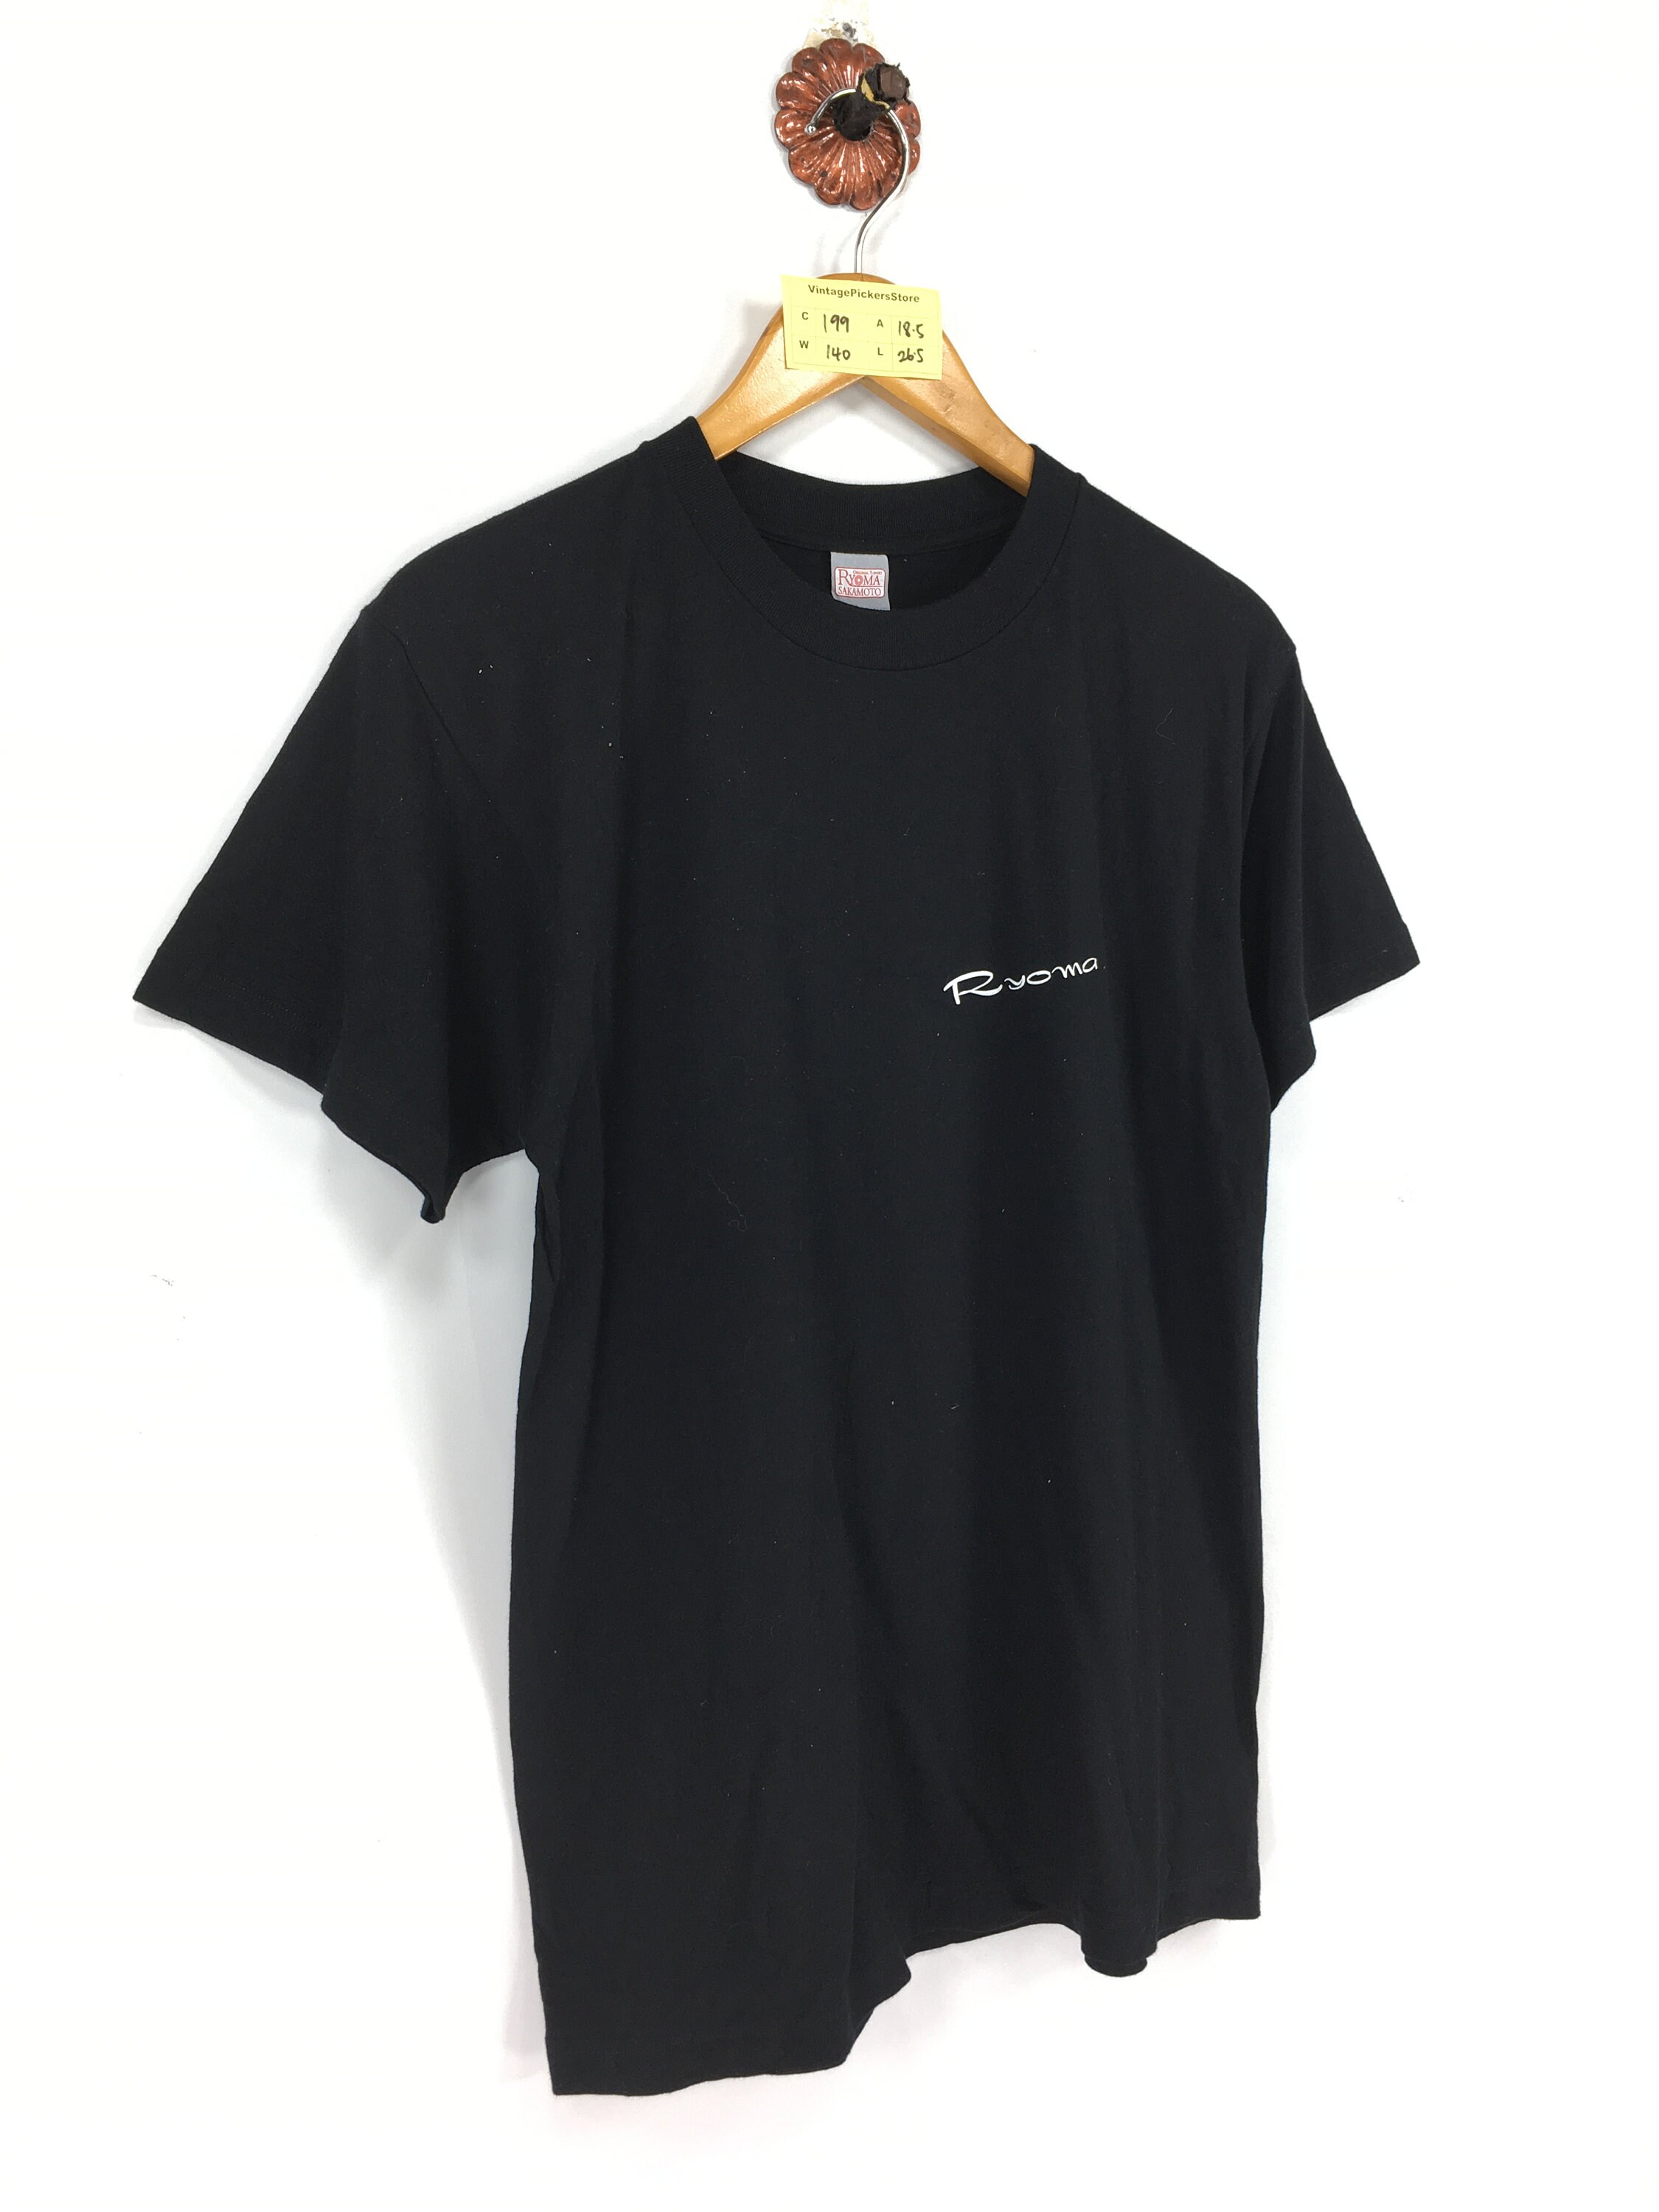 Vintage Ryoma Sakamoto Black Tshirt Unisex Small Japanese | Etsy